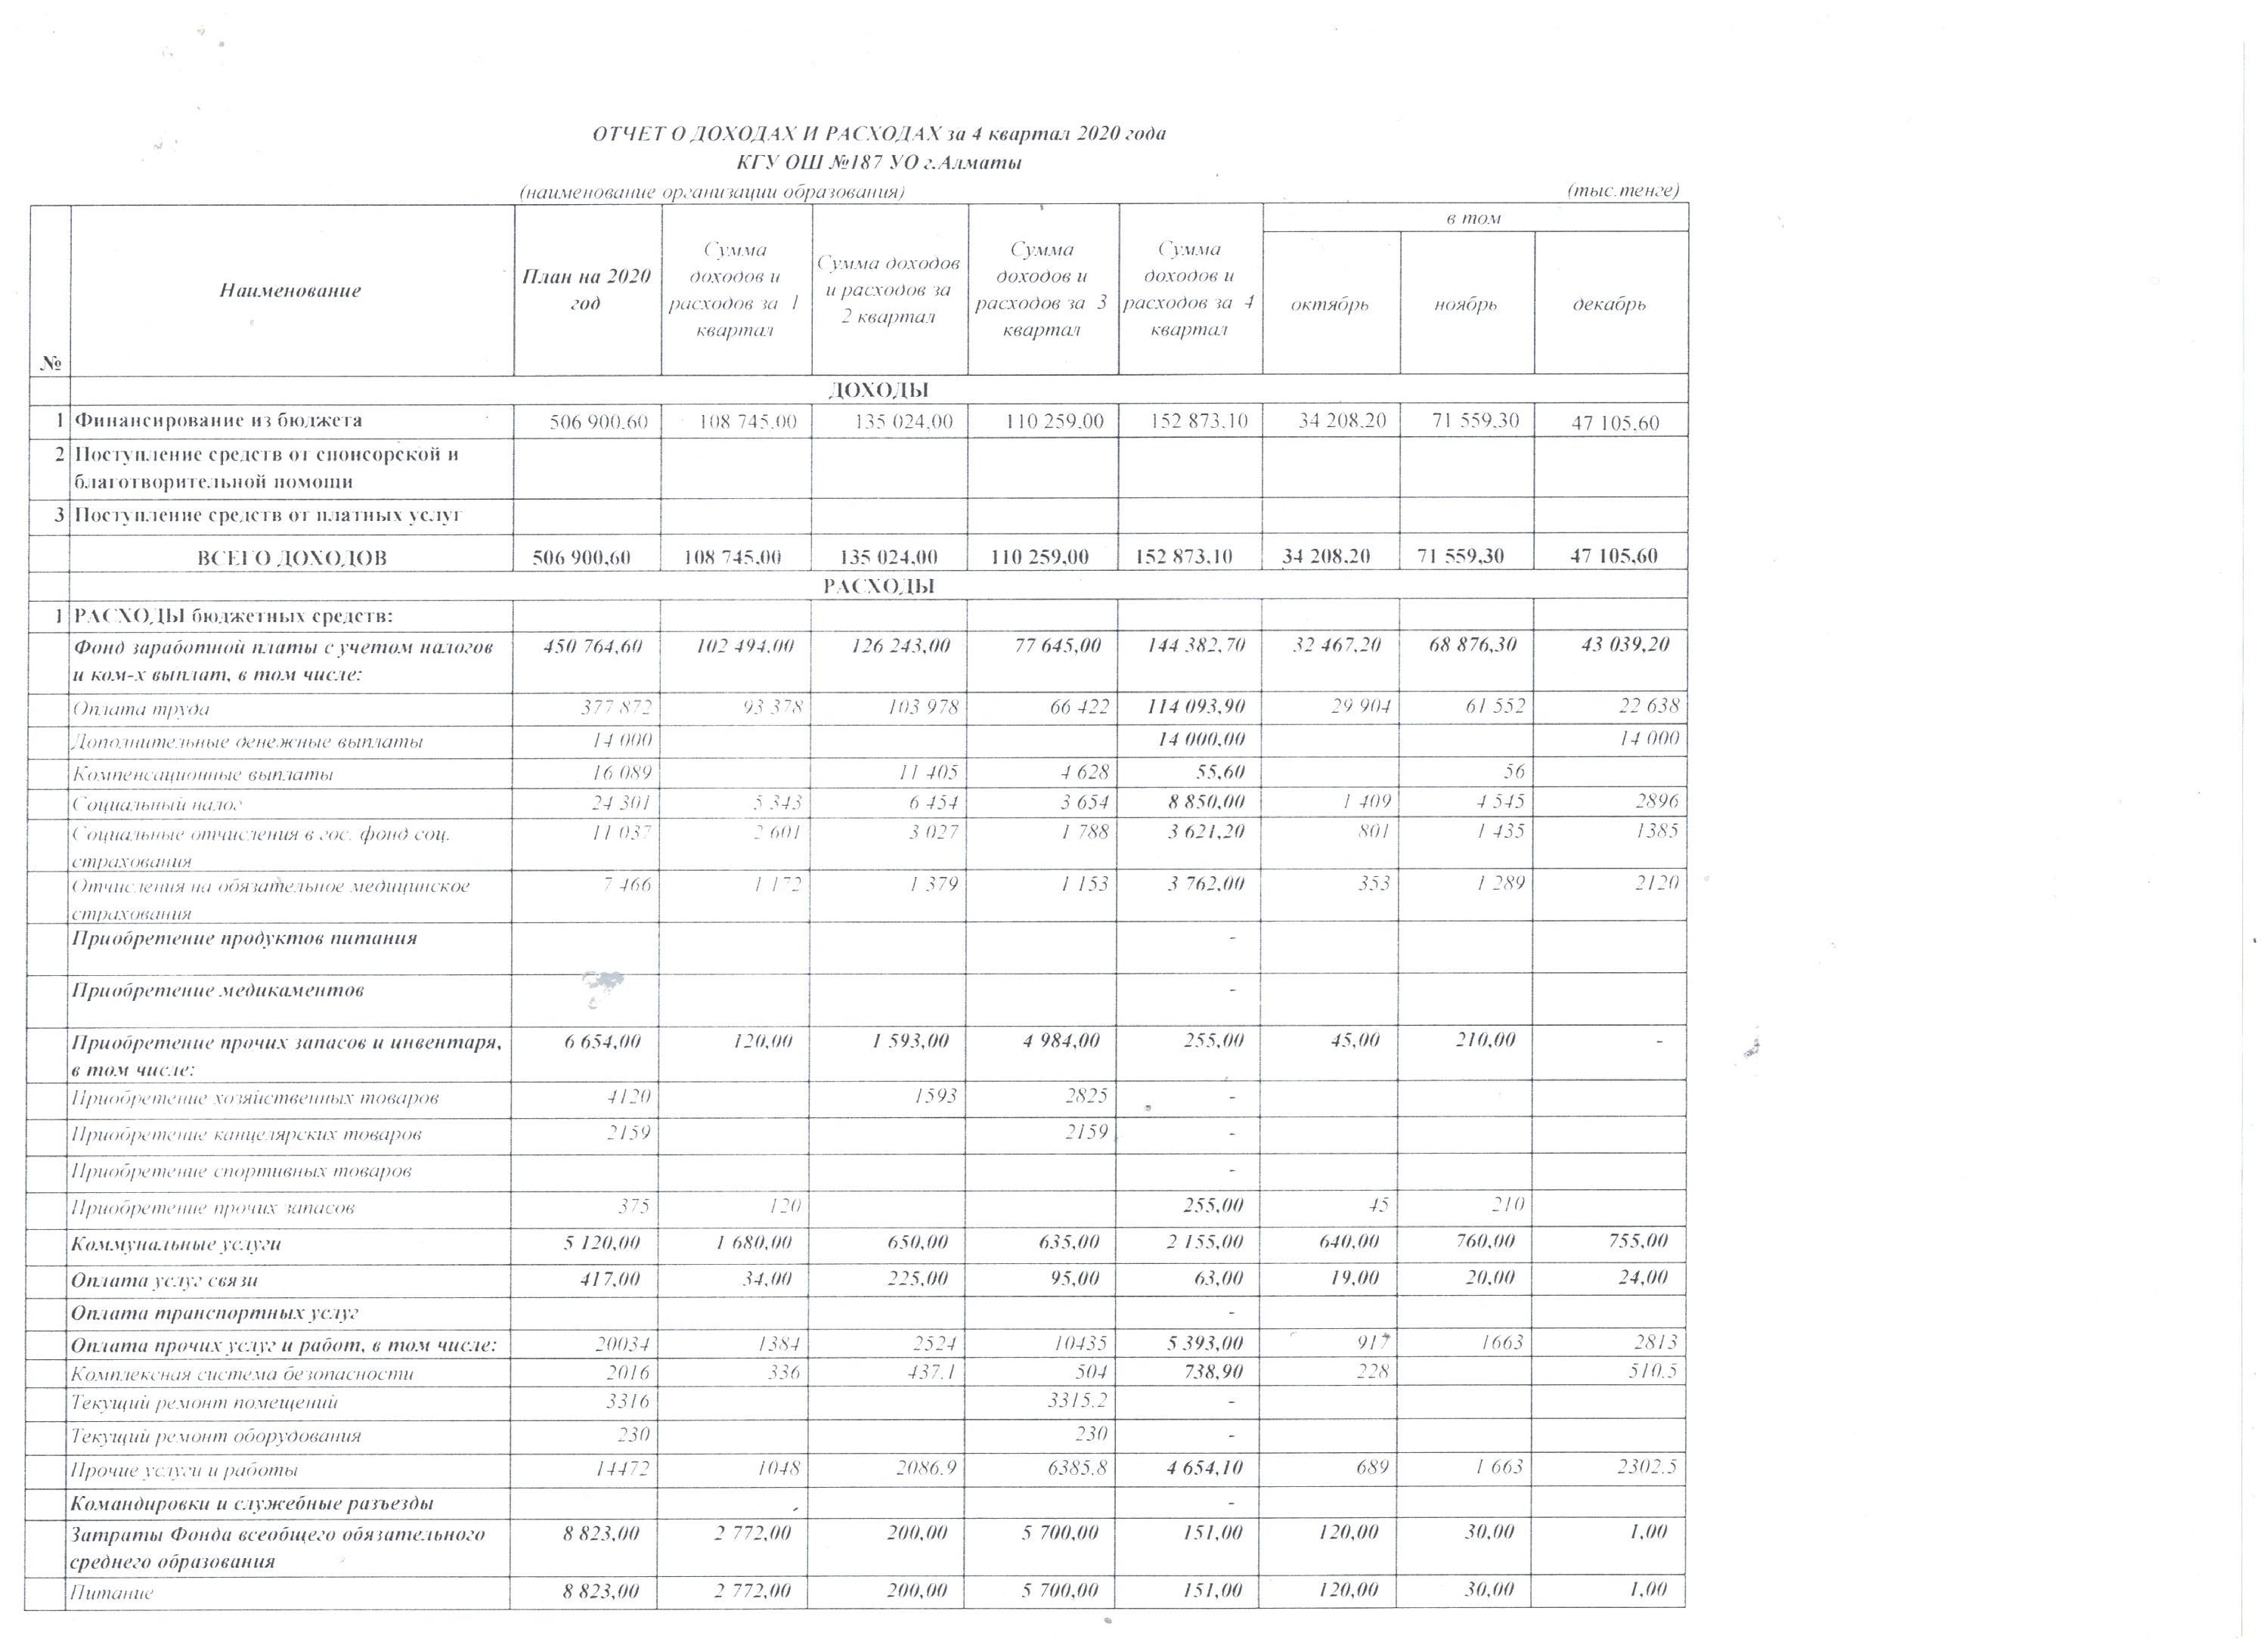 Отчет о доходах и расходах за 4 квартал 2020 года и пояснительная записка